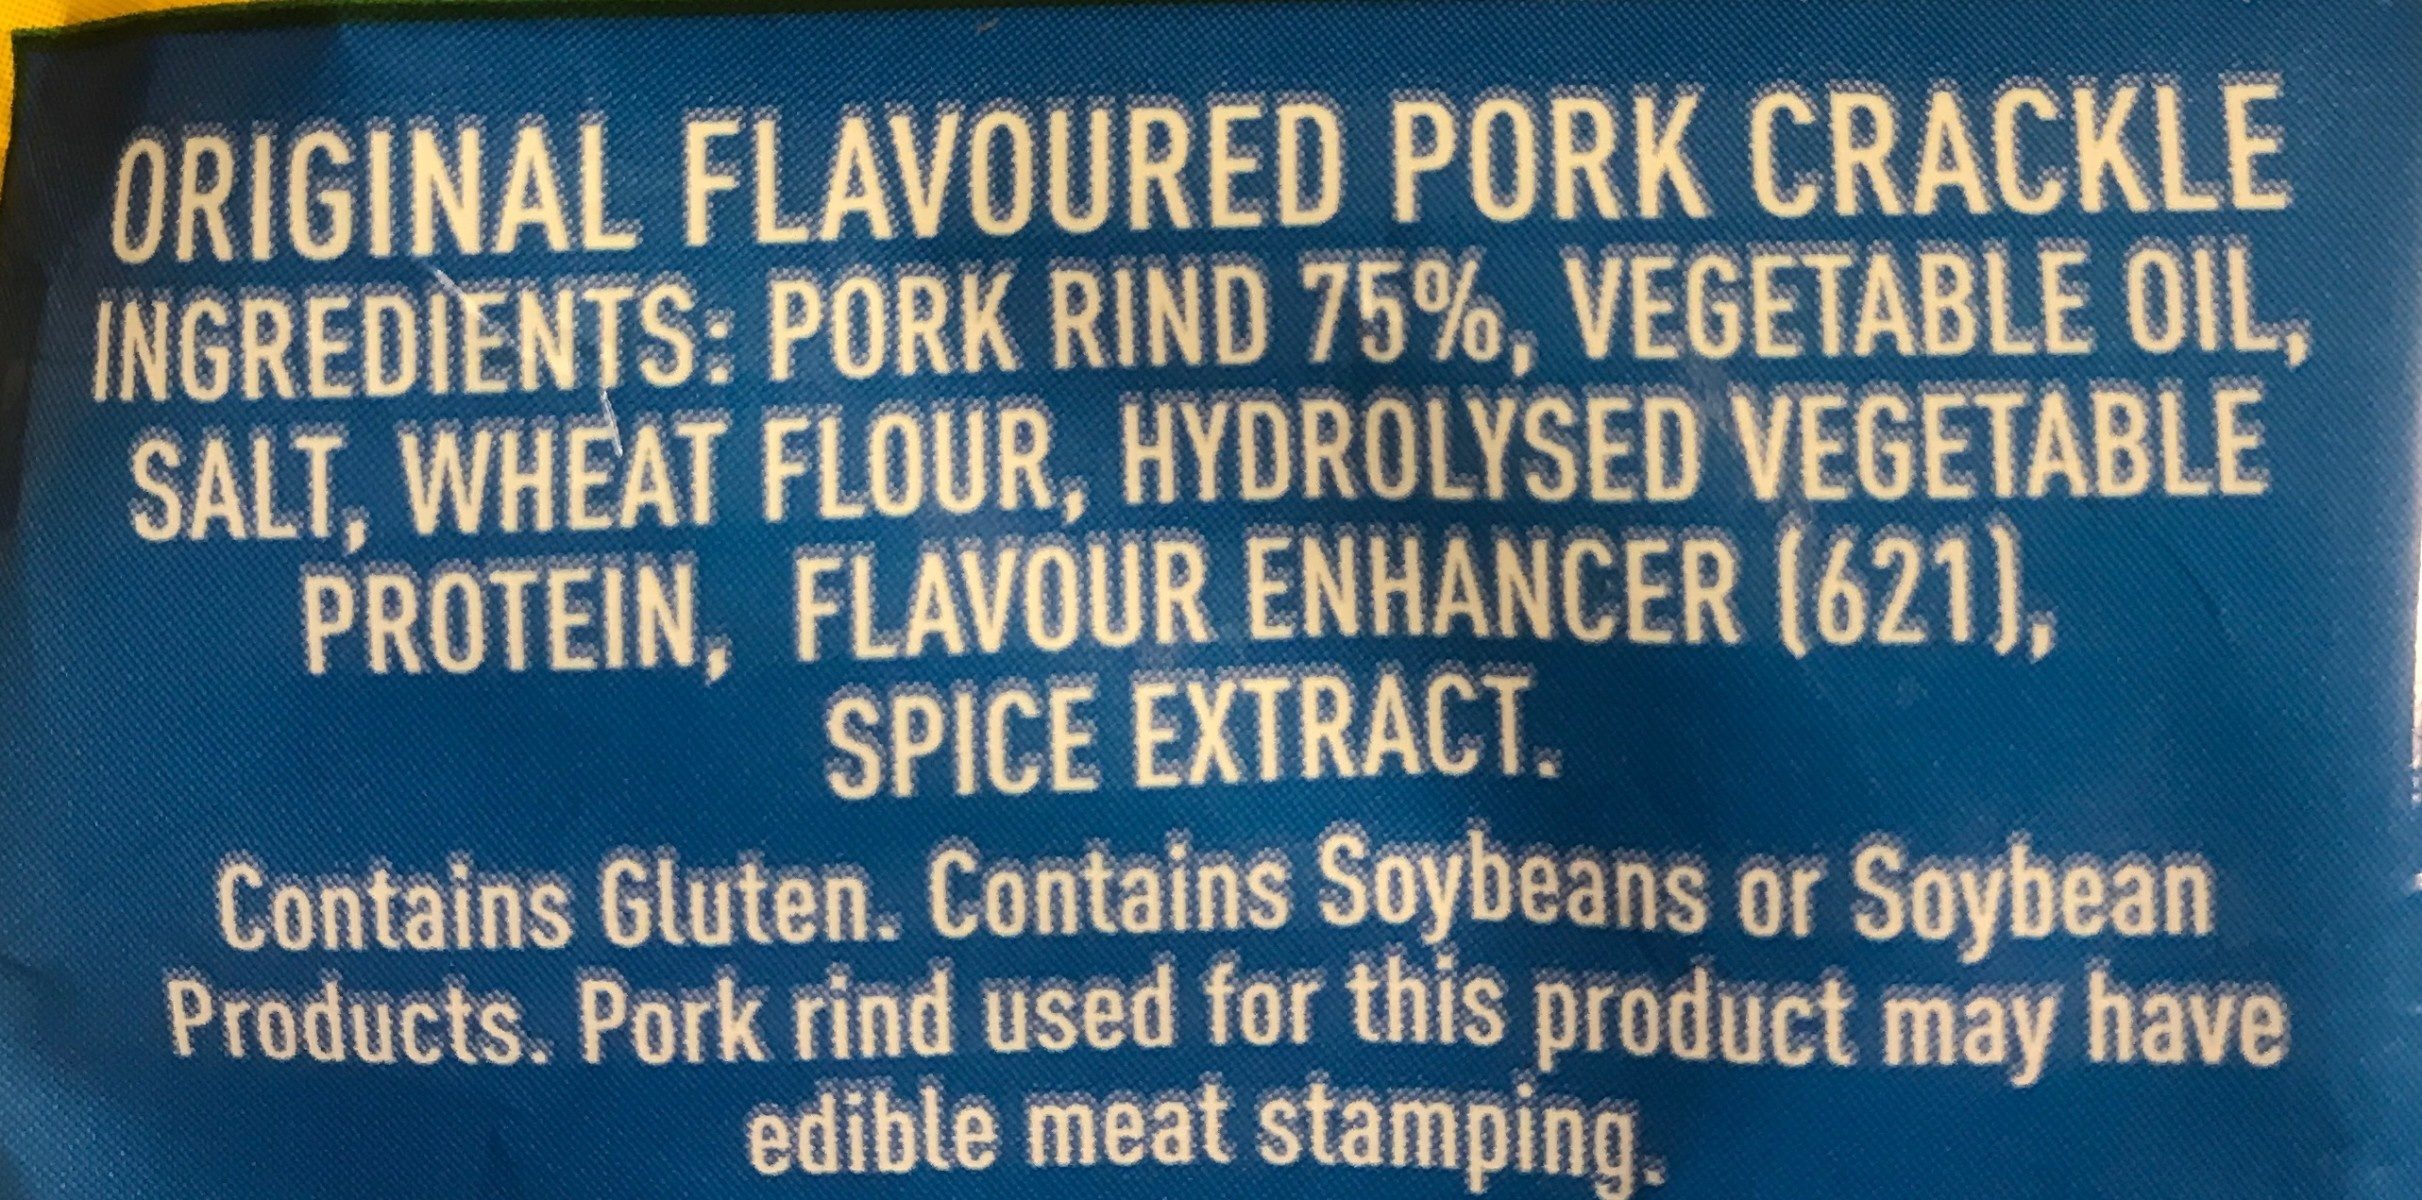 Pork crackle - Ingredients - fr